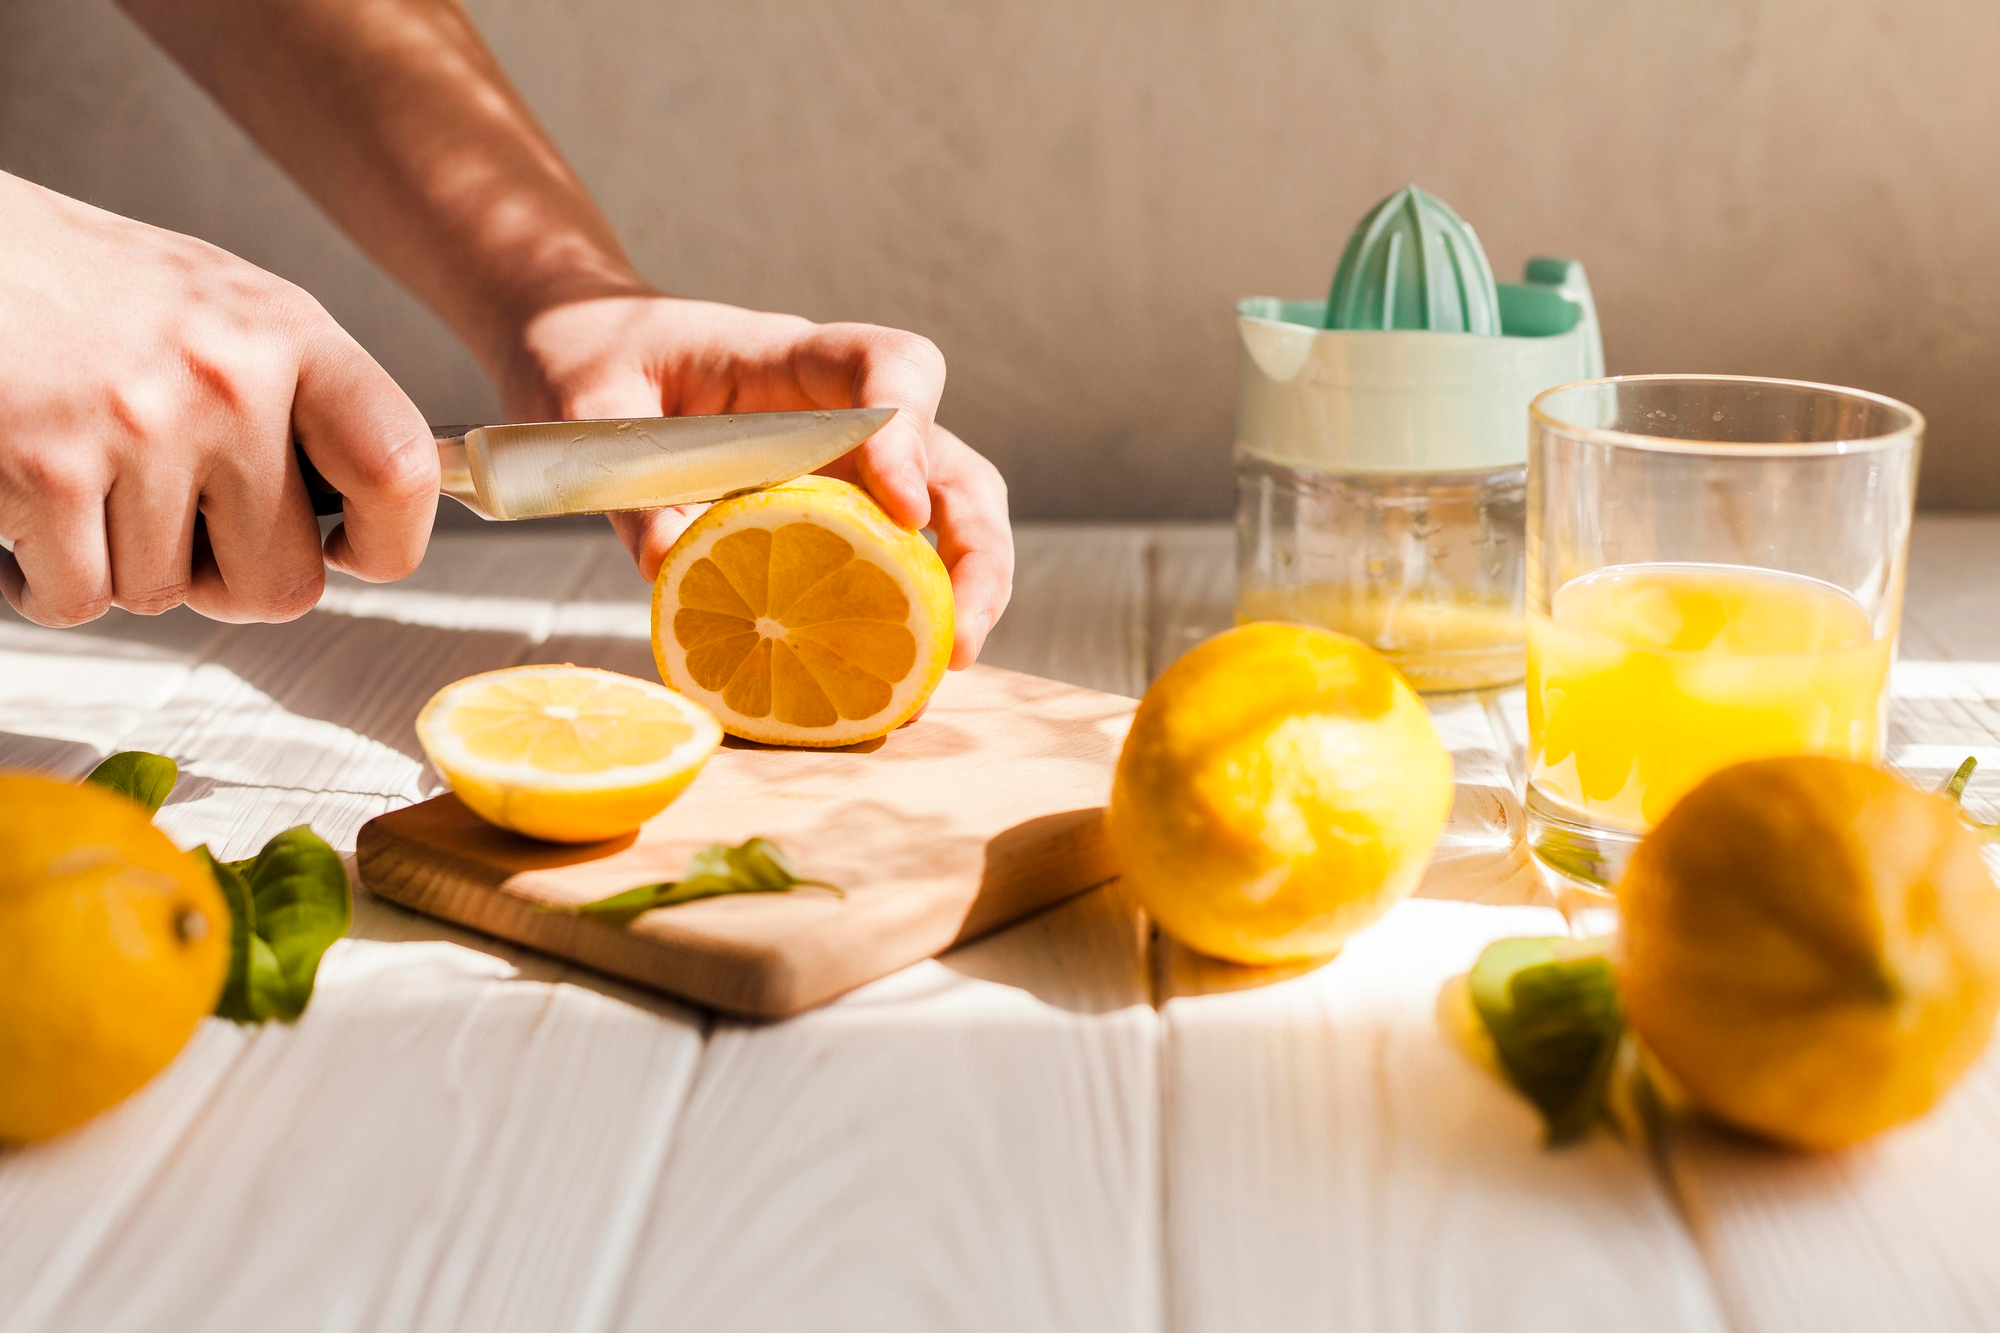 How To Make Orange Juice In A Blender